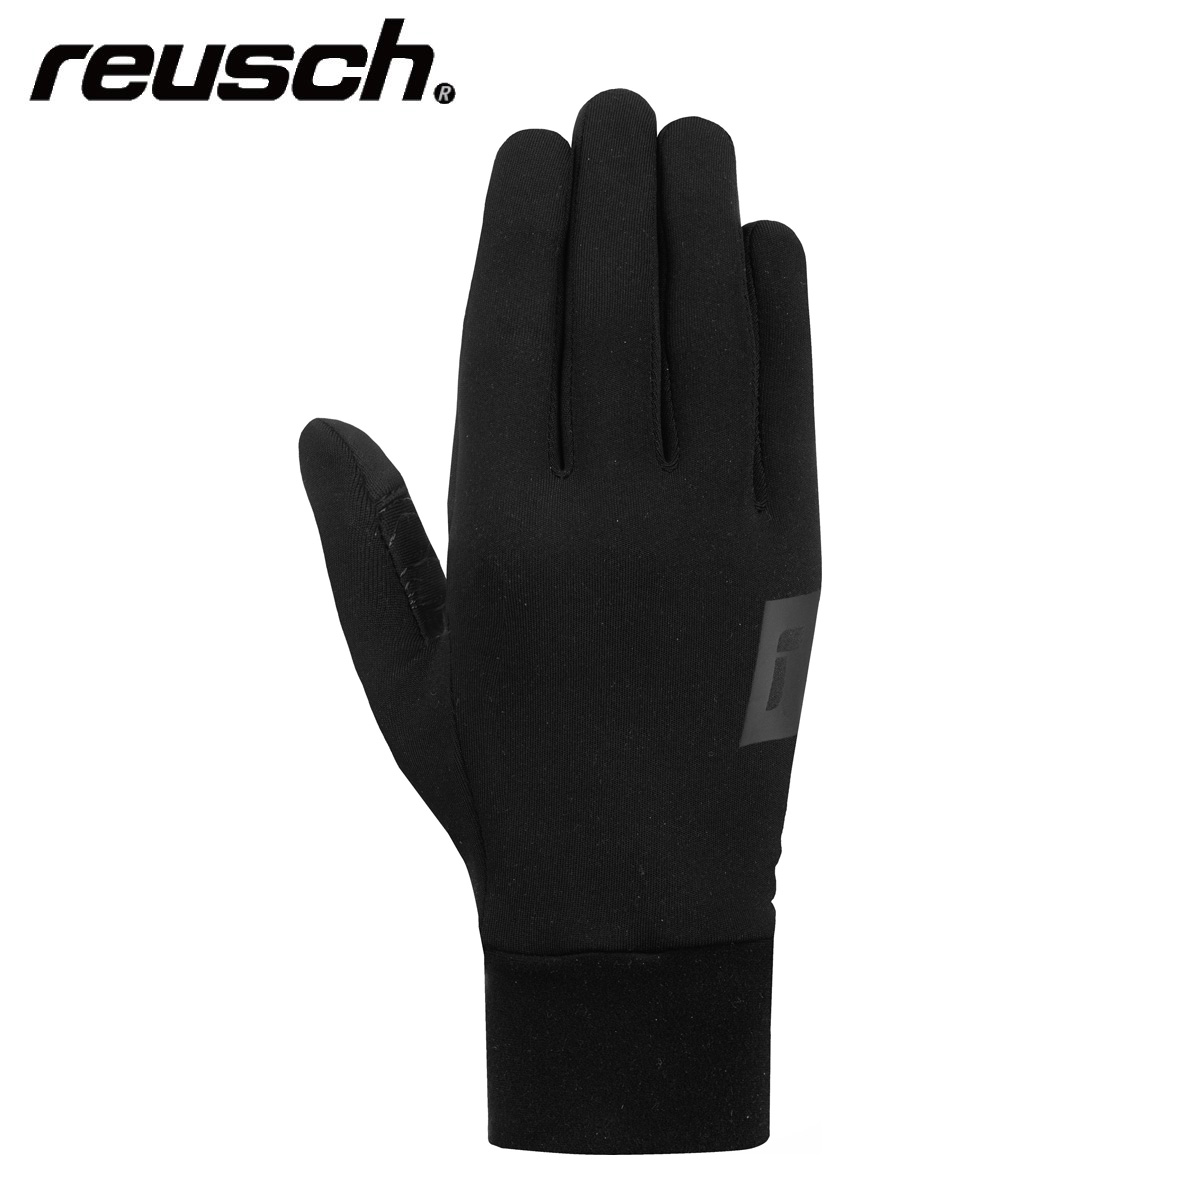 Tanabe Brand Glove】REUSCH and Top Ski Japanese Shop Gear Sports - Ski - Retailer Skiwear - 【Ski